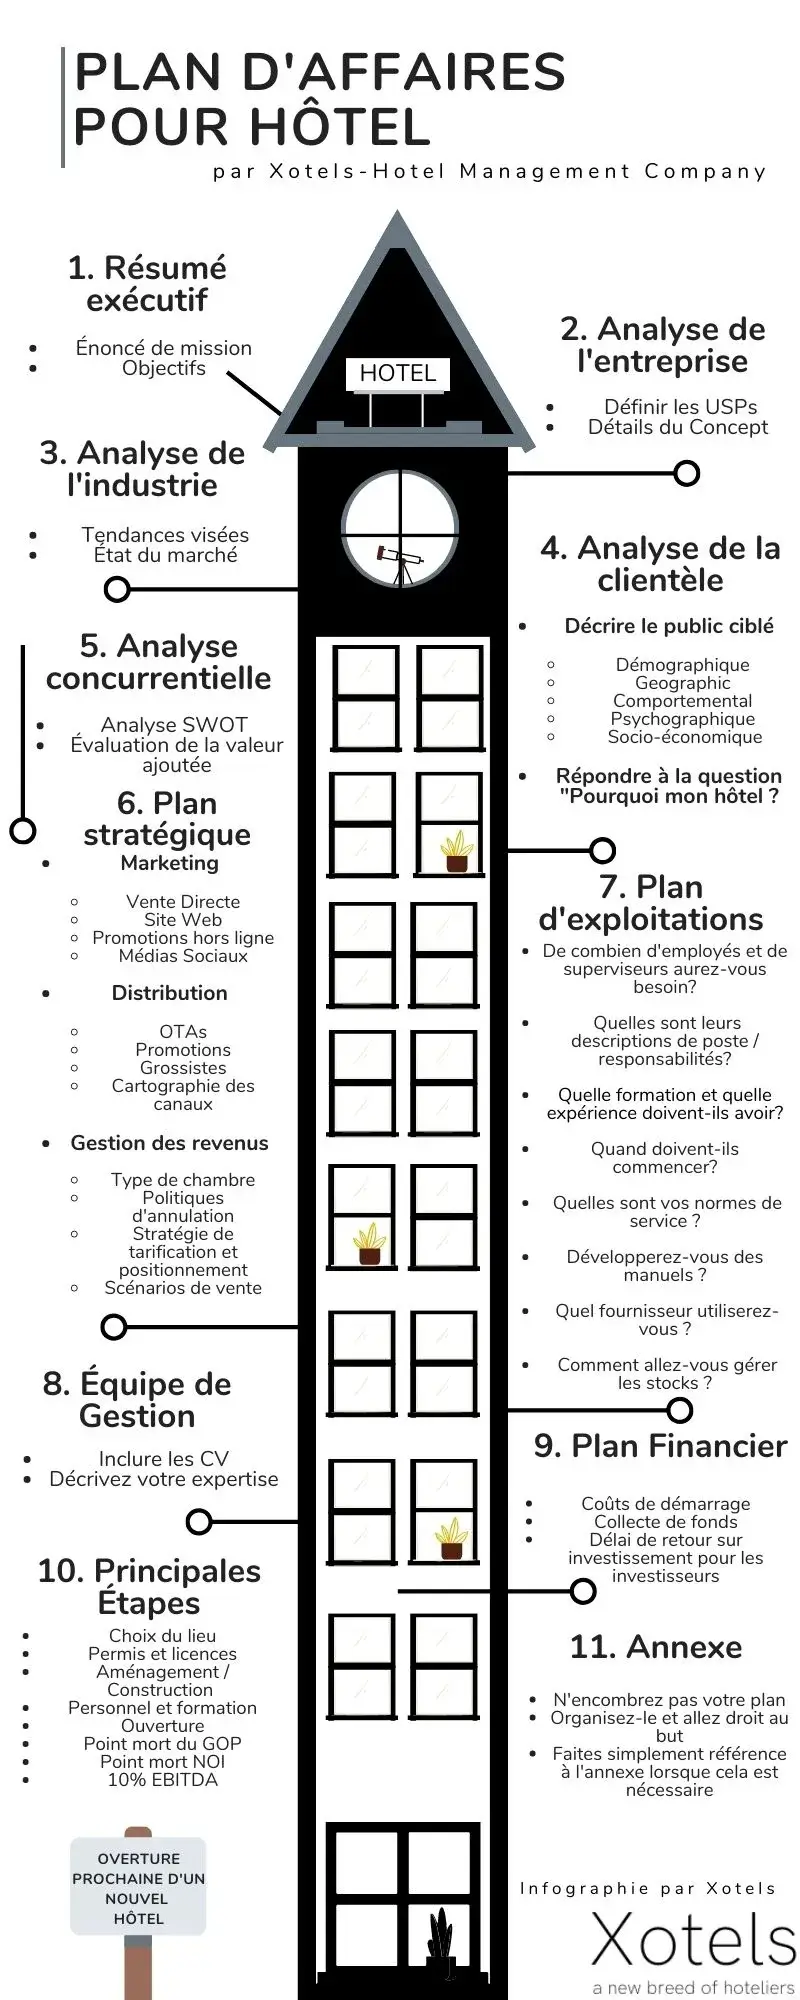 Voici les étapes de l'élaboration d'un plan d'affaires pour un hôtel. Voyez quelles sont les étapes à suivre pour rédiger votre propre plan d'affaires hôtelier.